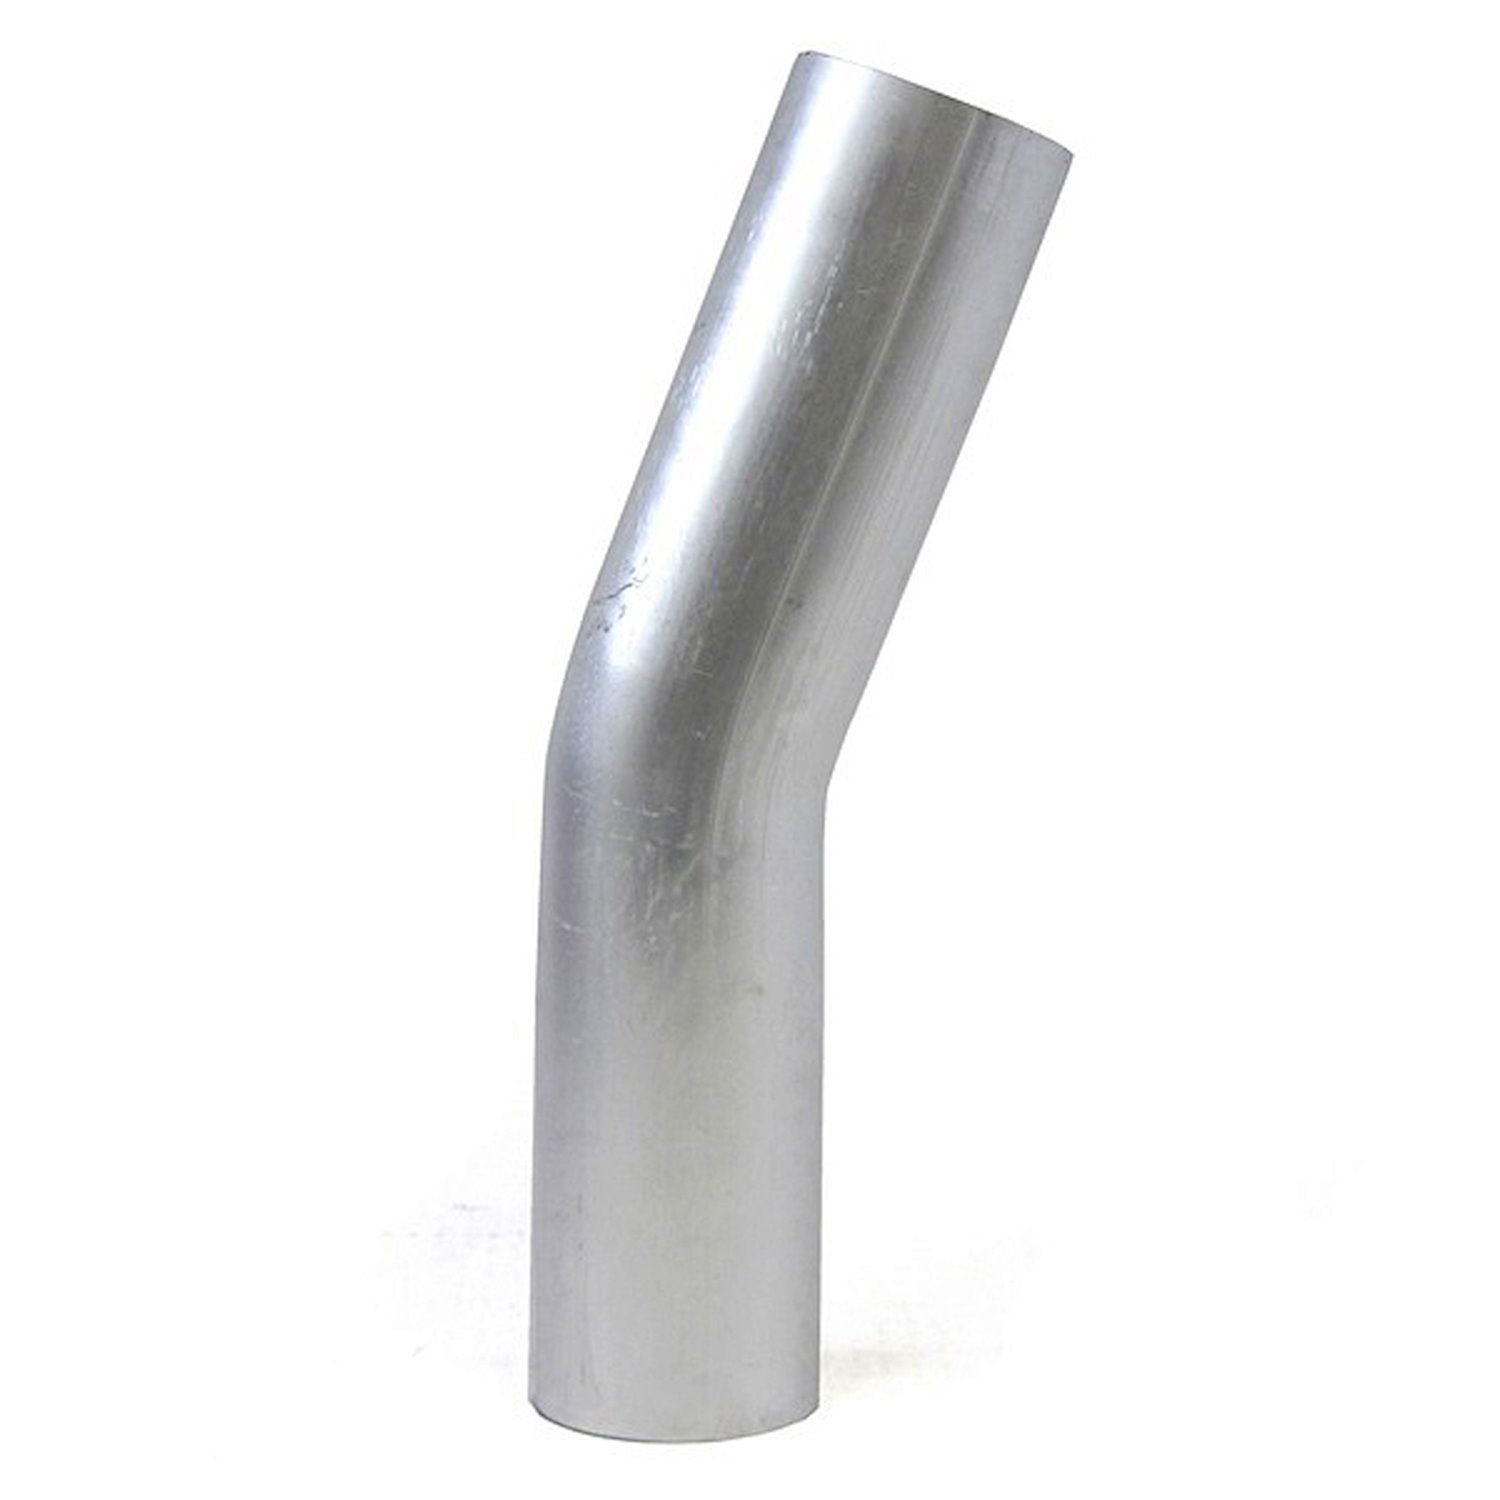 AT20-225-CLR-225 Aluminum Elbow Tube, 6061 Aluminum, 20-Degree Bend Elbow Tubing, 2-1/4 in. OD, Large Radius, 2-1/4 in. CLR